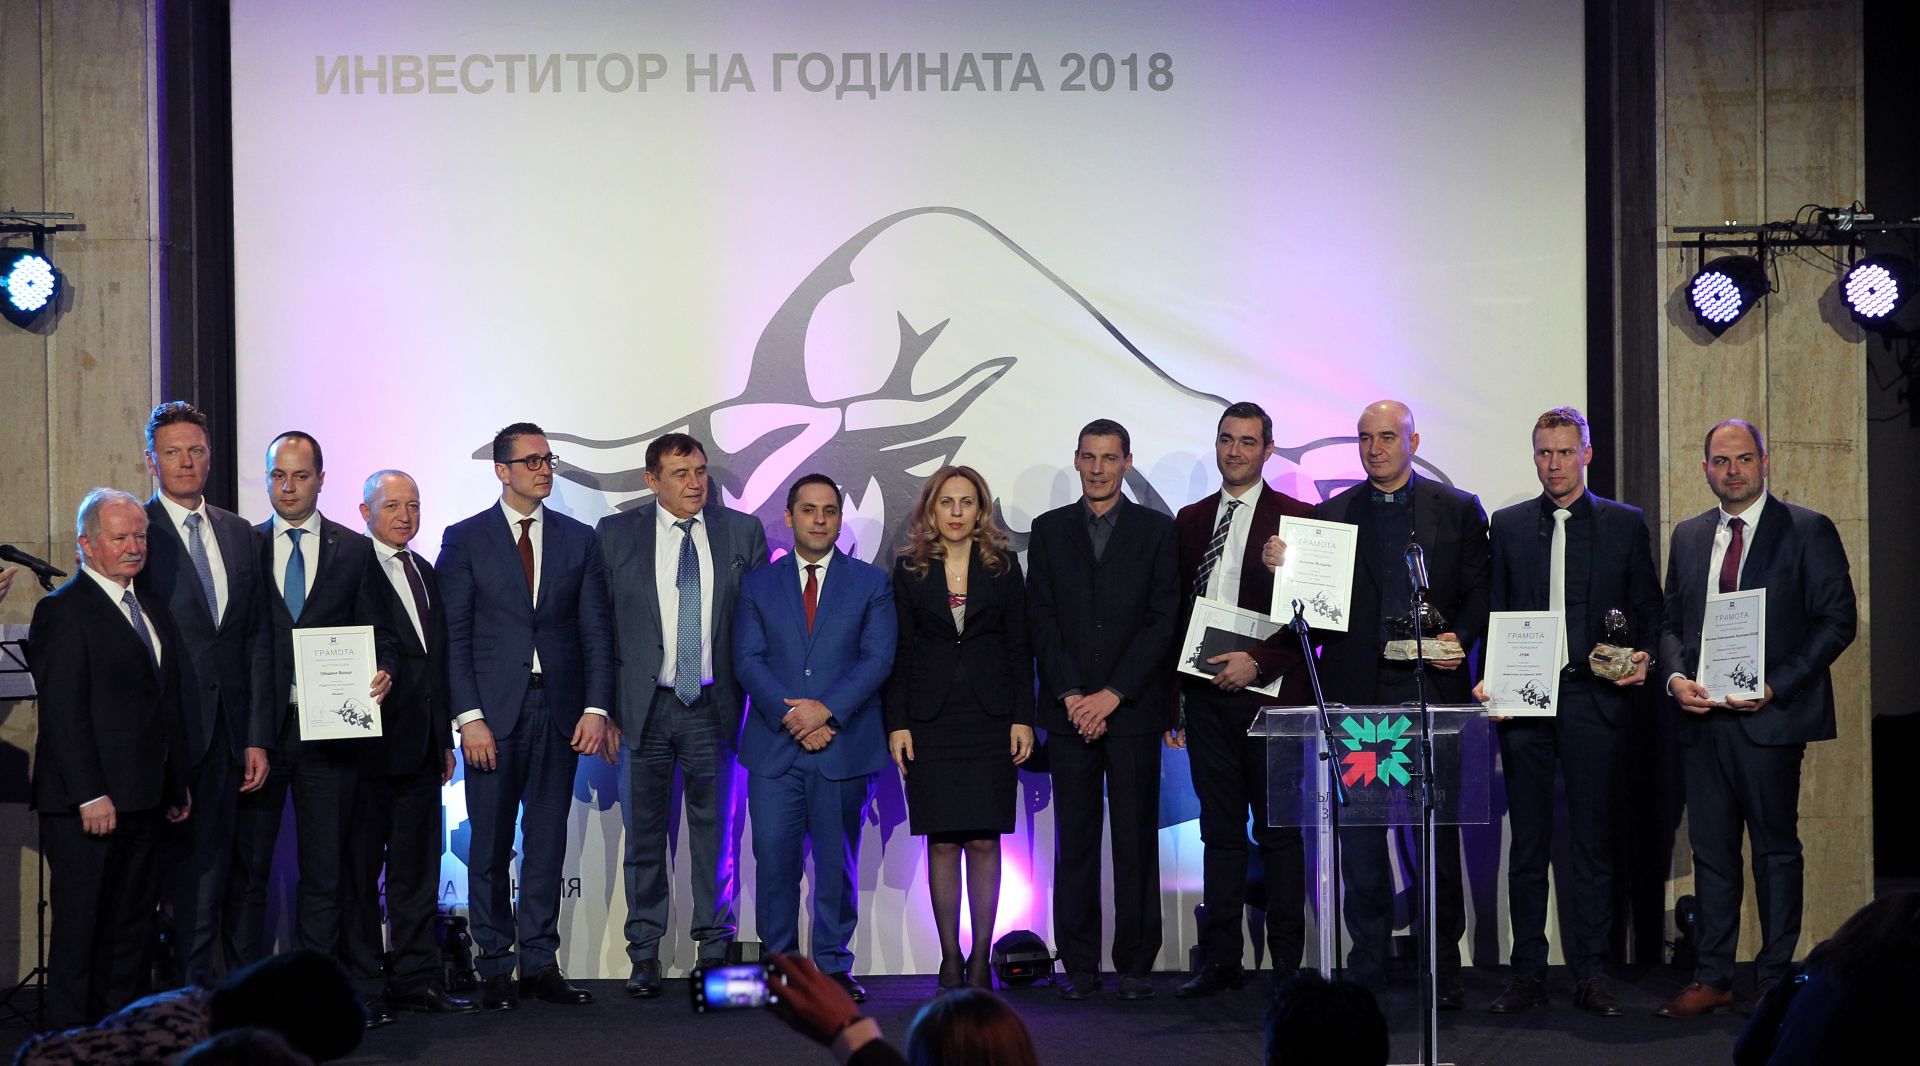 Годишните награди "Инвеститор на годината" на Българската агенция за инвестиции бяха връчени в зала 6 на НДК